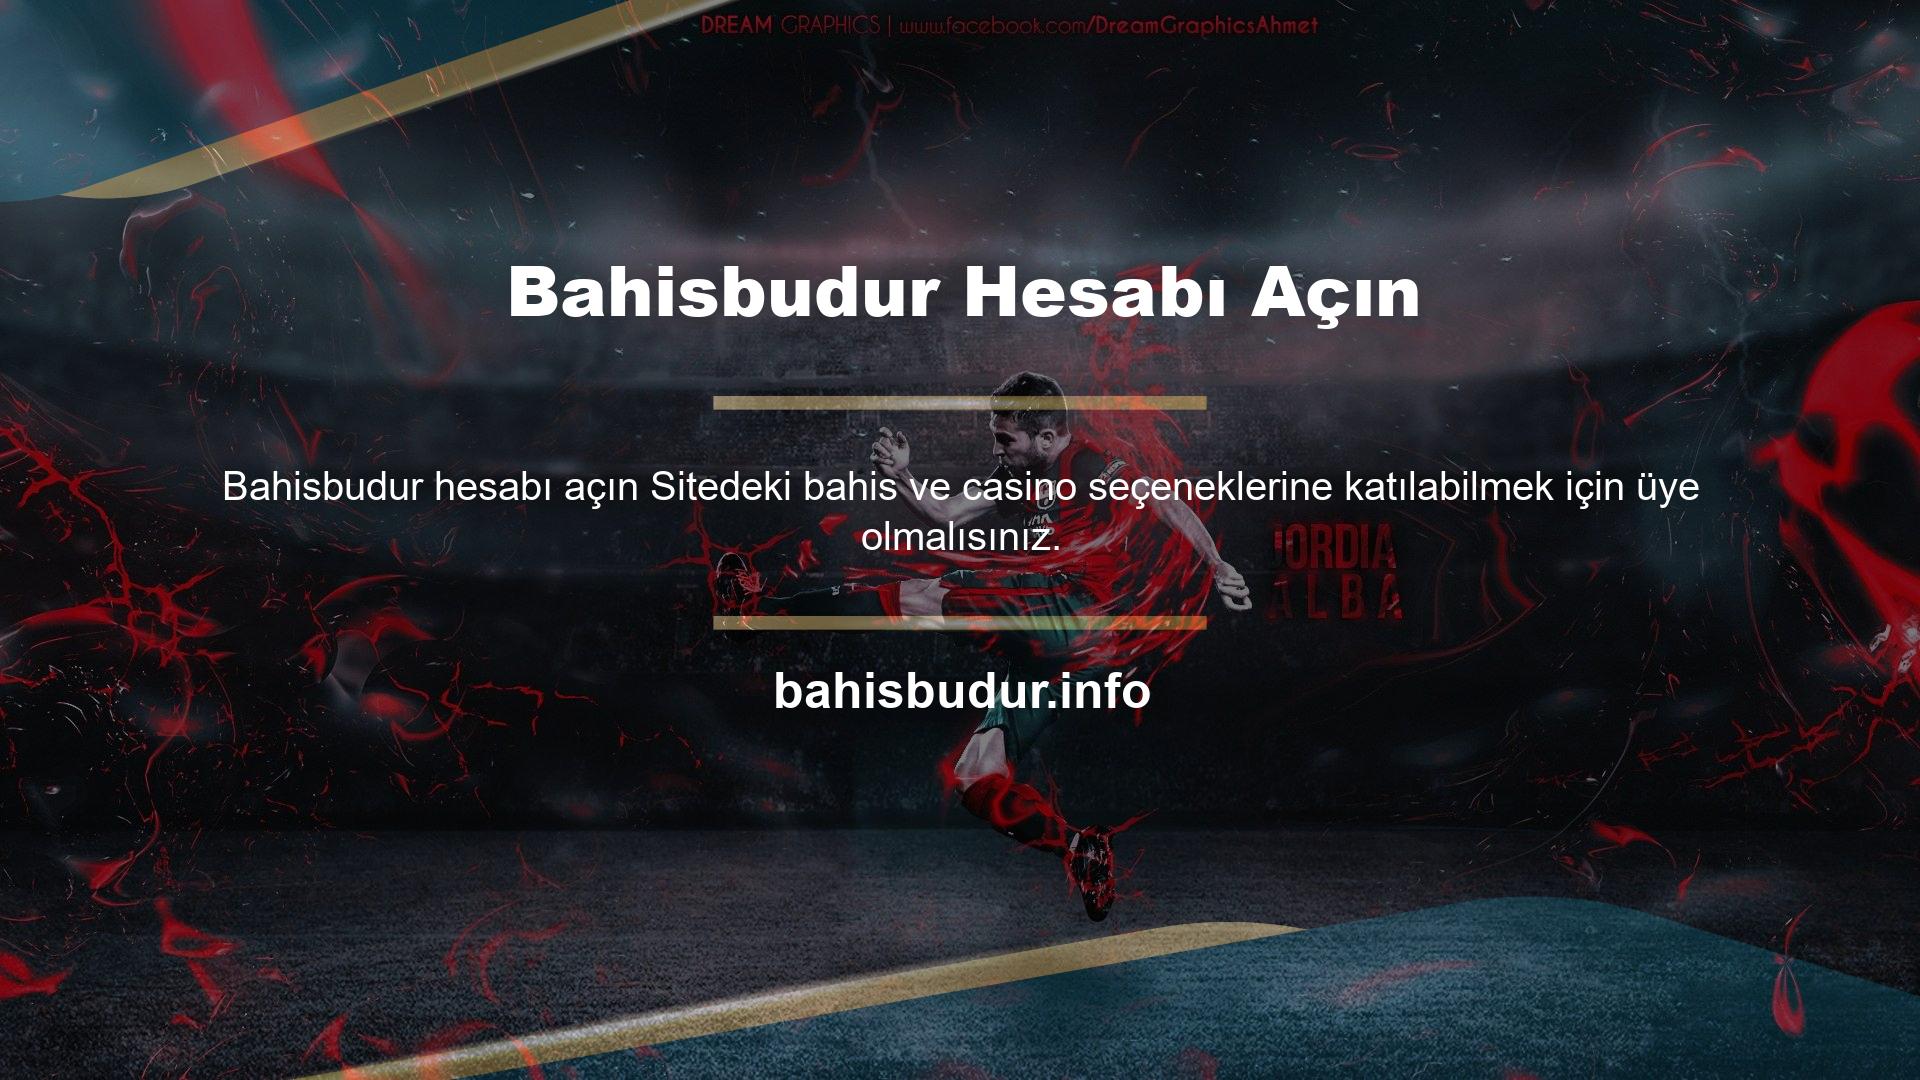 Bahisbudur üyelik süreci ücretsiz ve hızlıdır